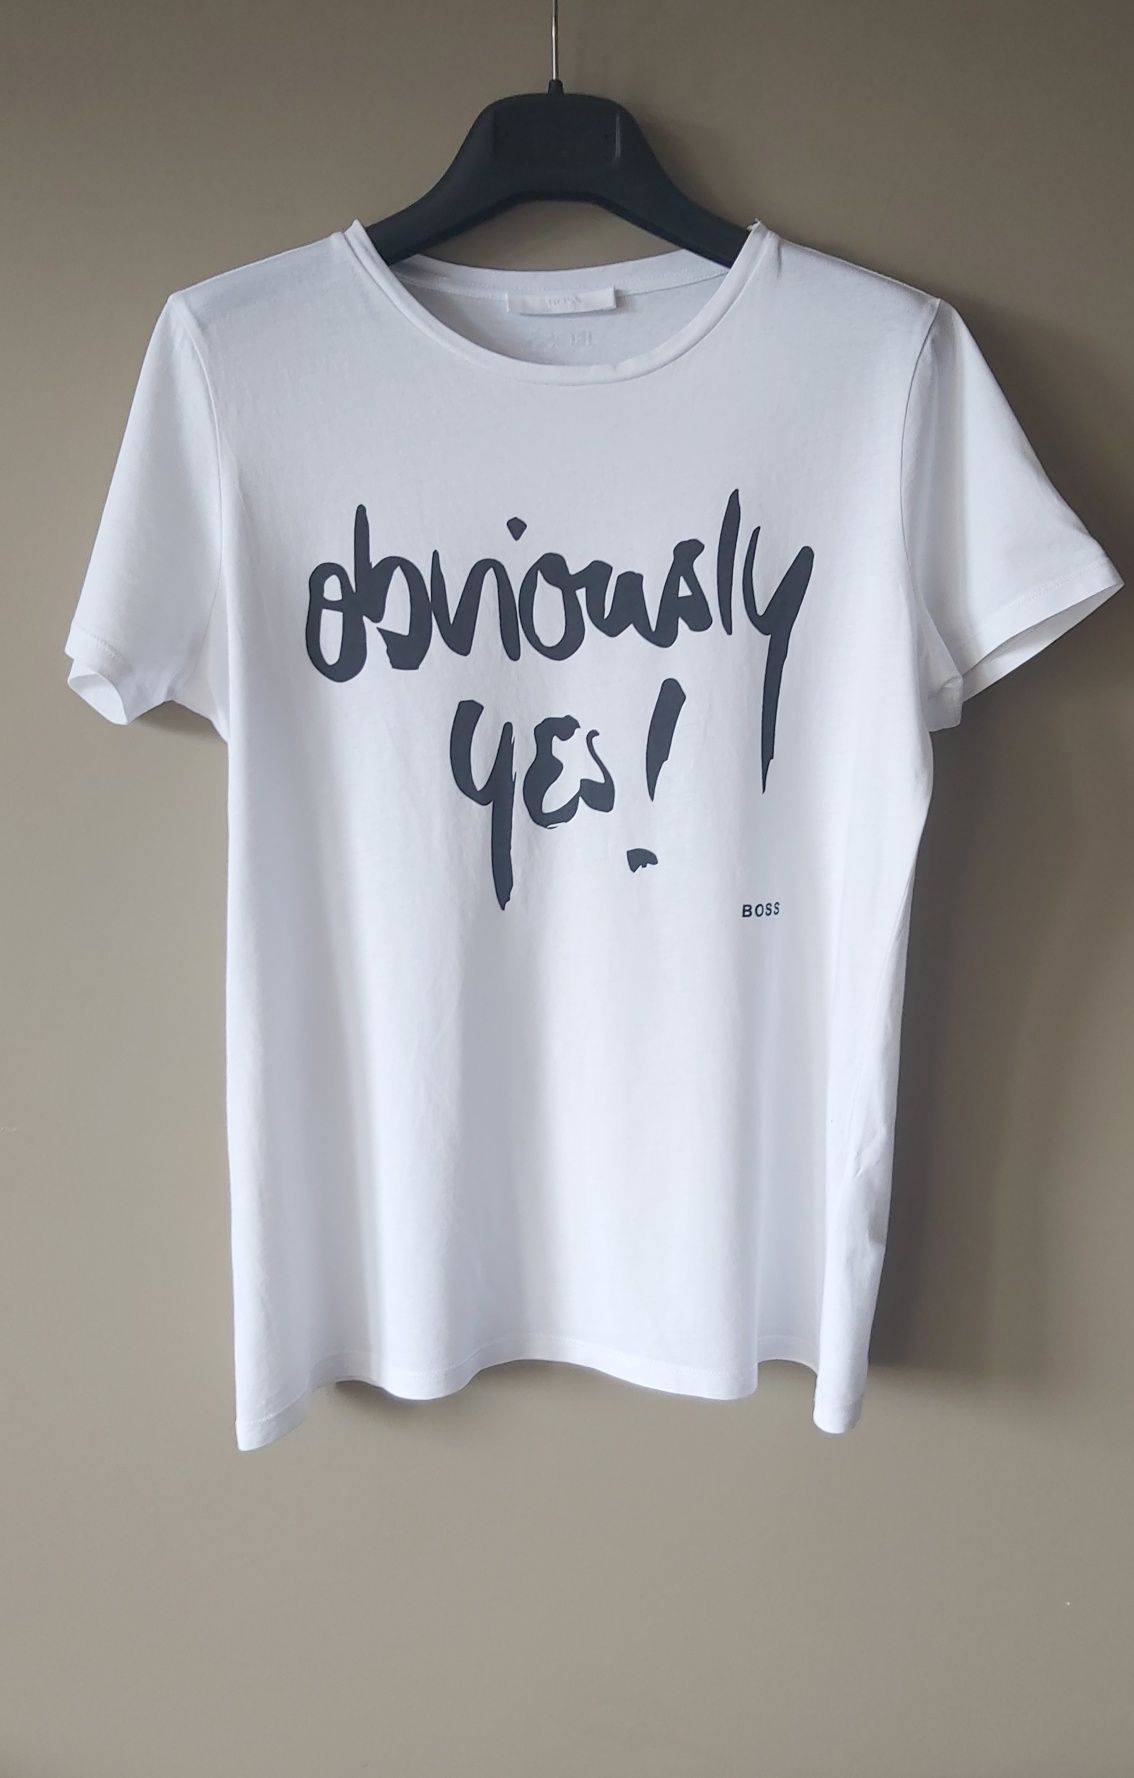 Hugo Boss koszulka t-shirt rozmiar M damska